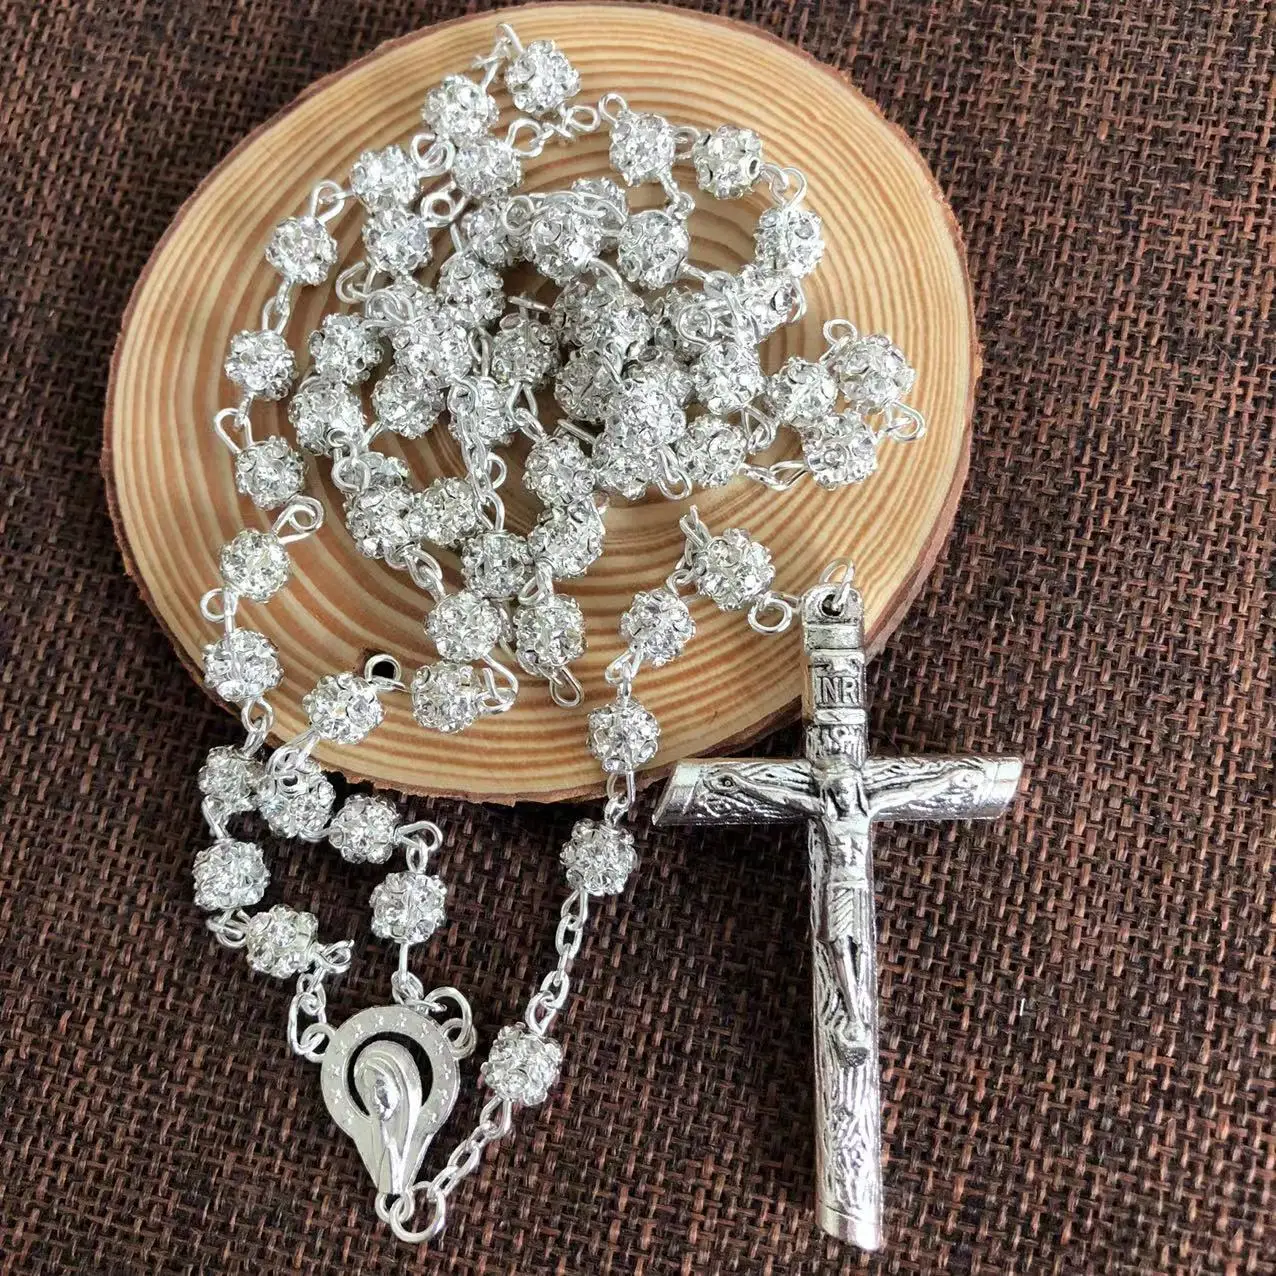 Buy Nazareth Store Hematite Rosary Black Stone Beads Necklace With  Jerusalem Holy Soil & Cross Velvet Gift Bag Online at desertcartINDIA